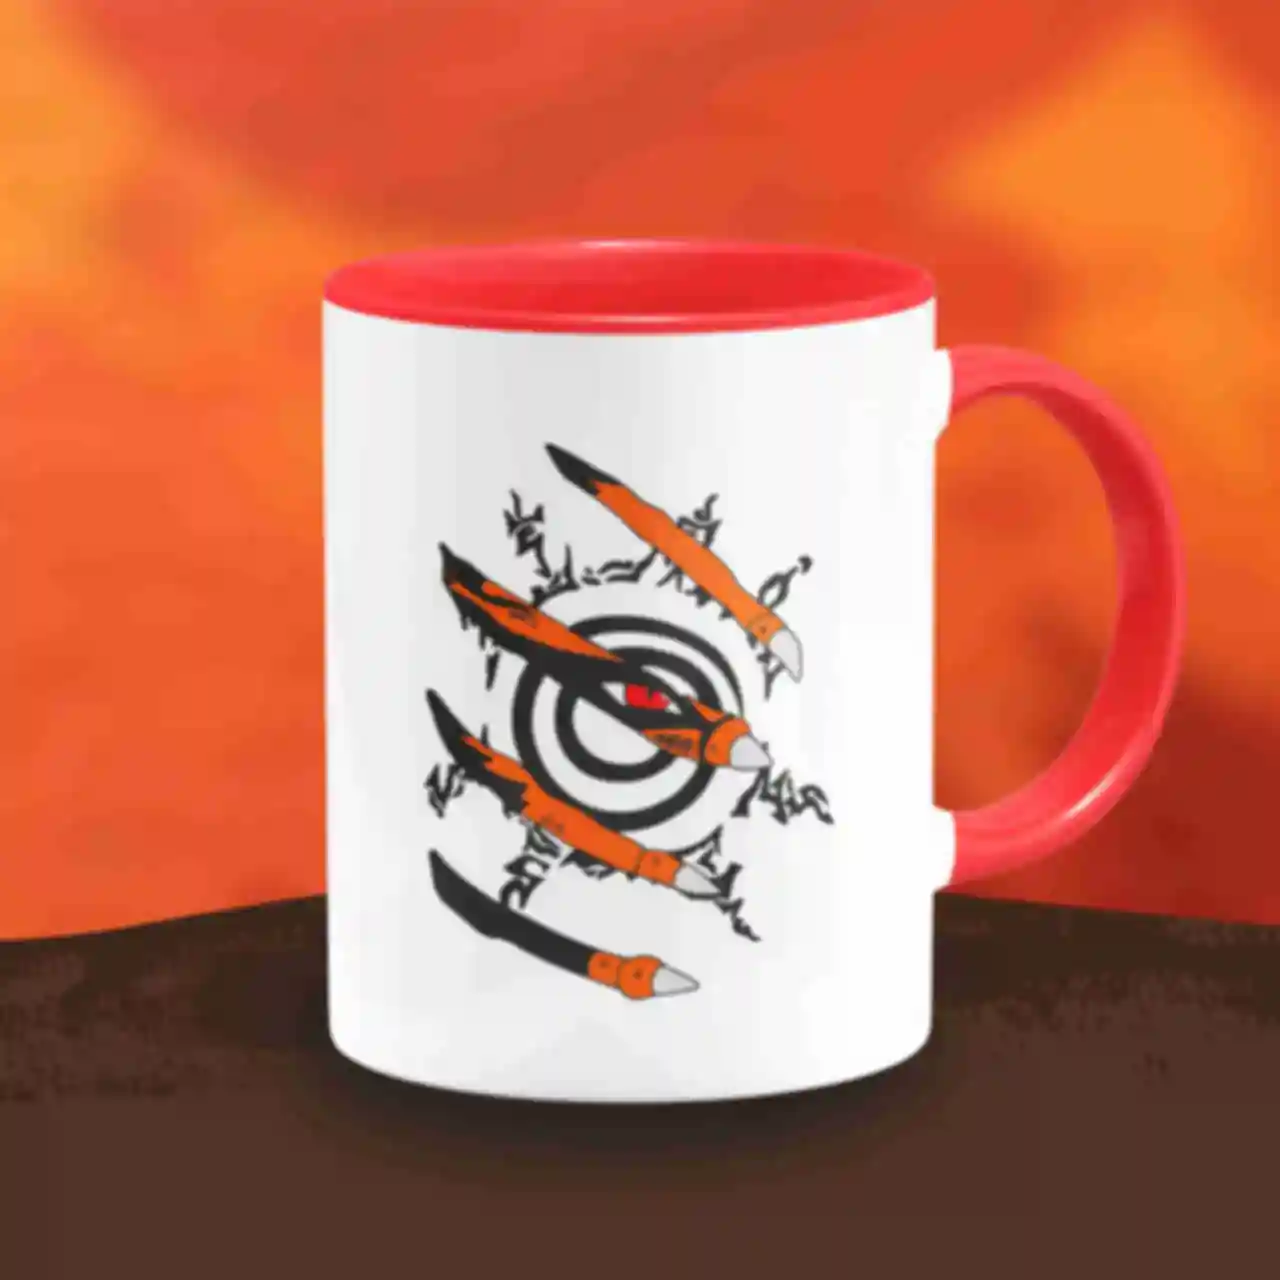 Чашка ⦁ Курама ⦁ Кружка Девятихвостый кицунэ ⦁ Kurama ⦁ Сувениры и посуда ⦁ Подарки в стиле аниме Naruto. Фото №1